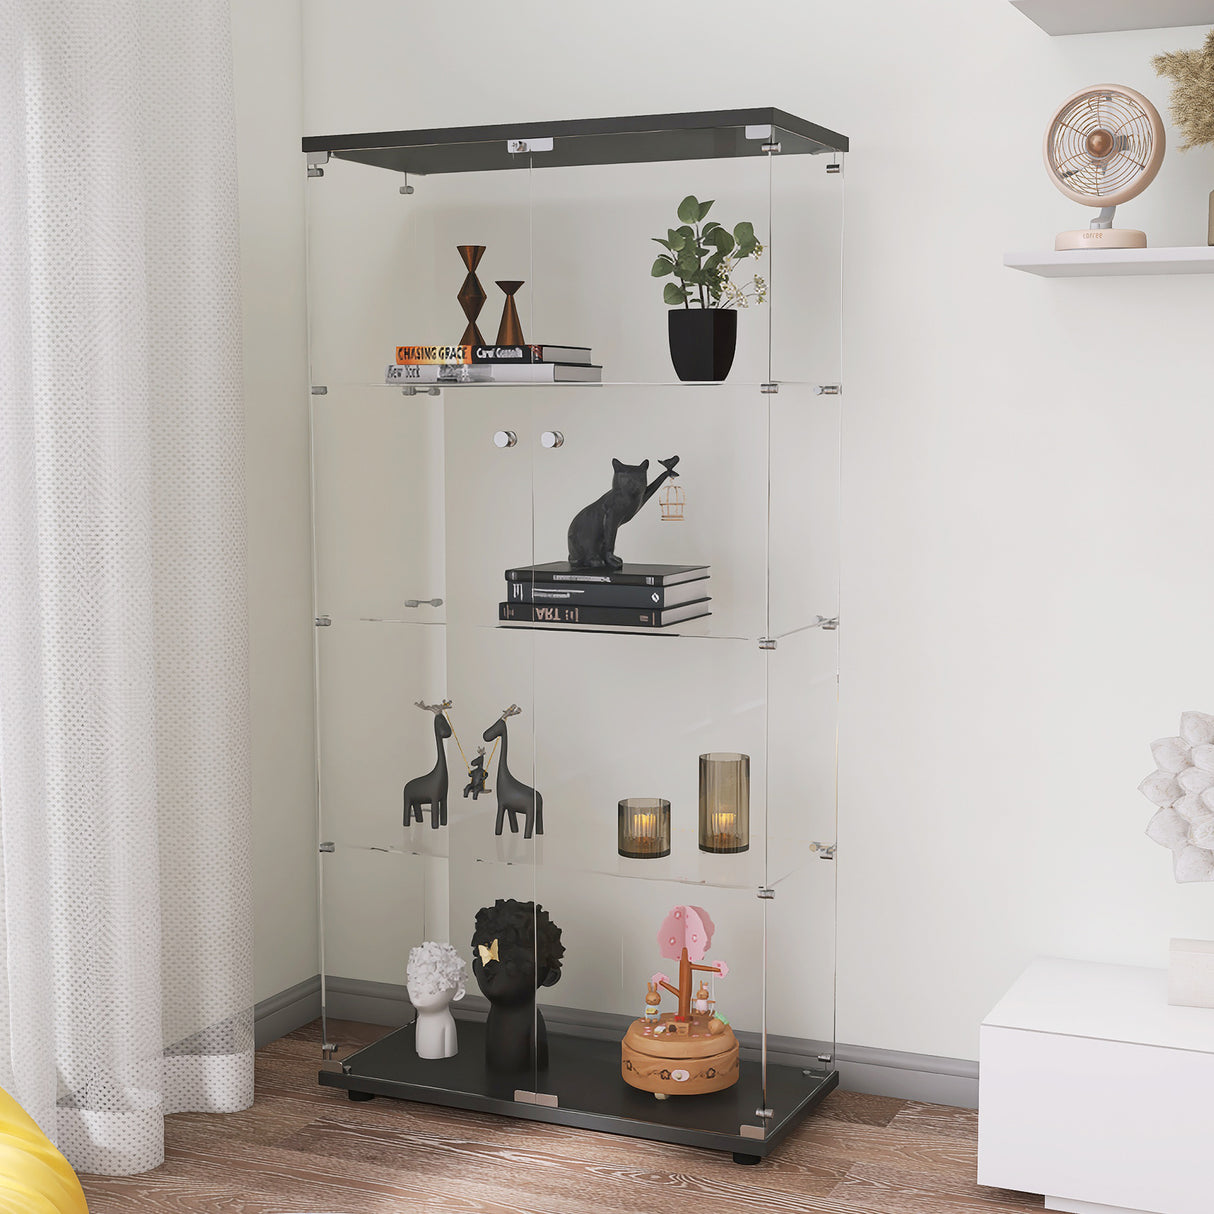 Two-door Glass Display Cabinet 4 Shelves with Door, Floor Standing Curio Bookshelf for Living Room Bedroom Office, 64.56” x 31.69”x 14.37”, Black Home Elegance USA